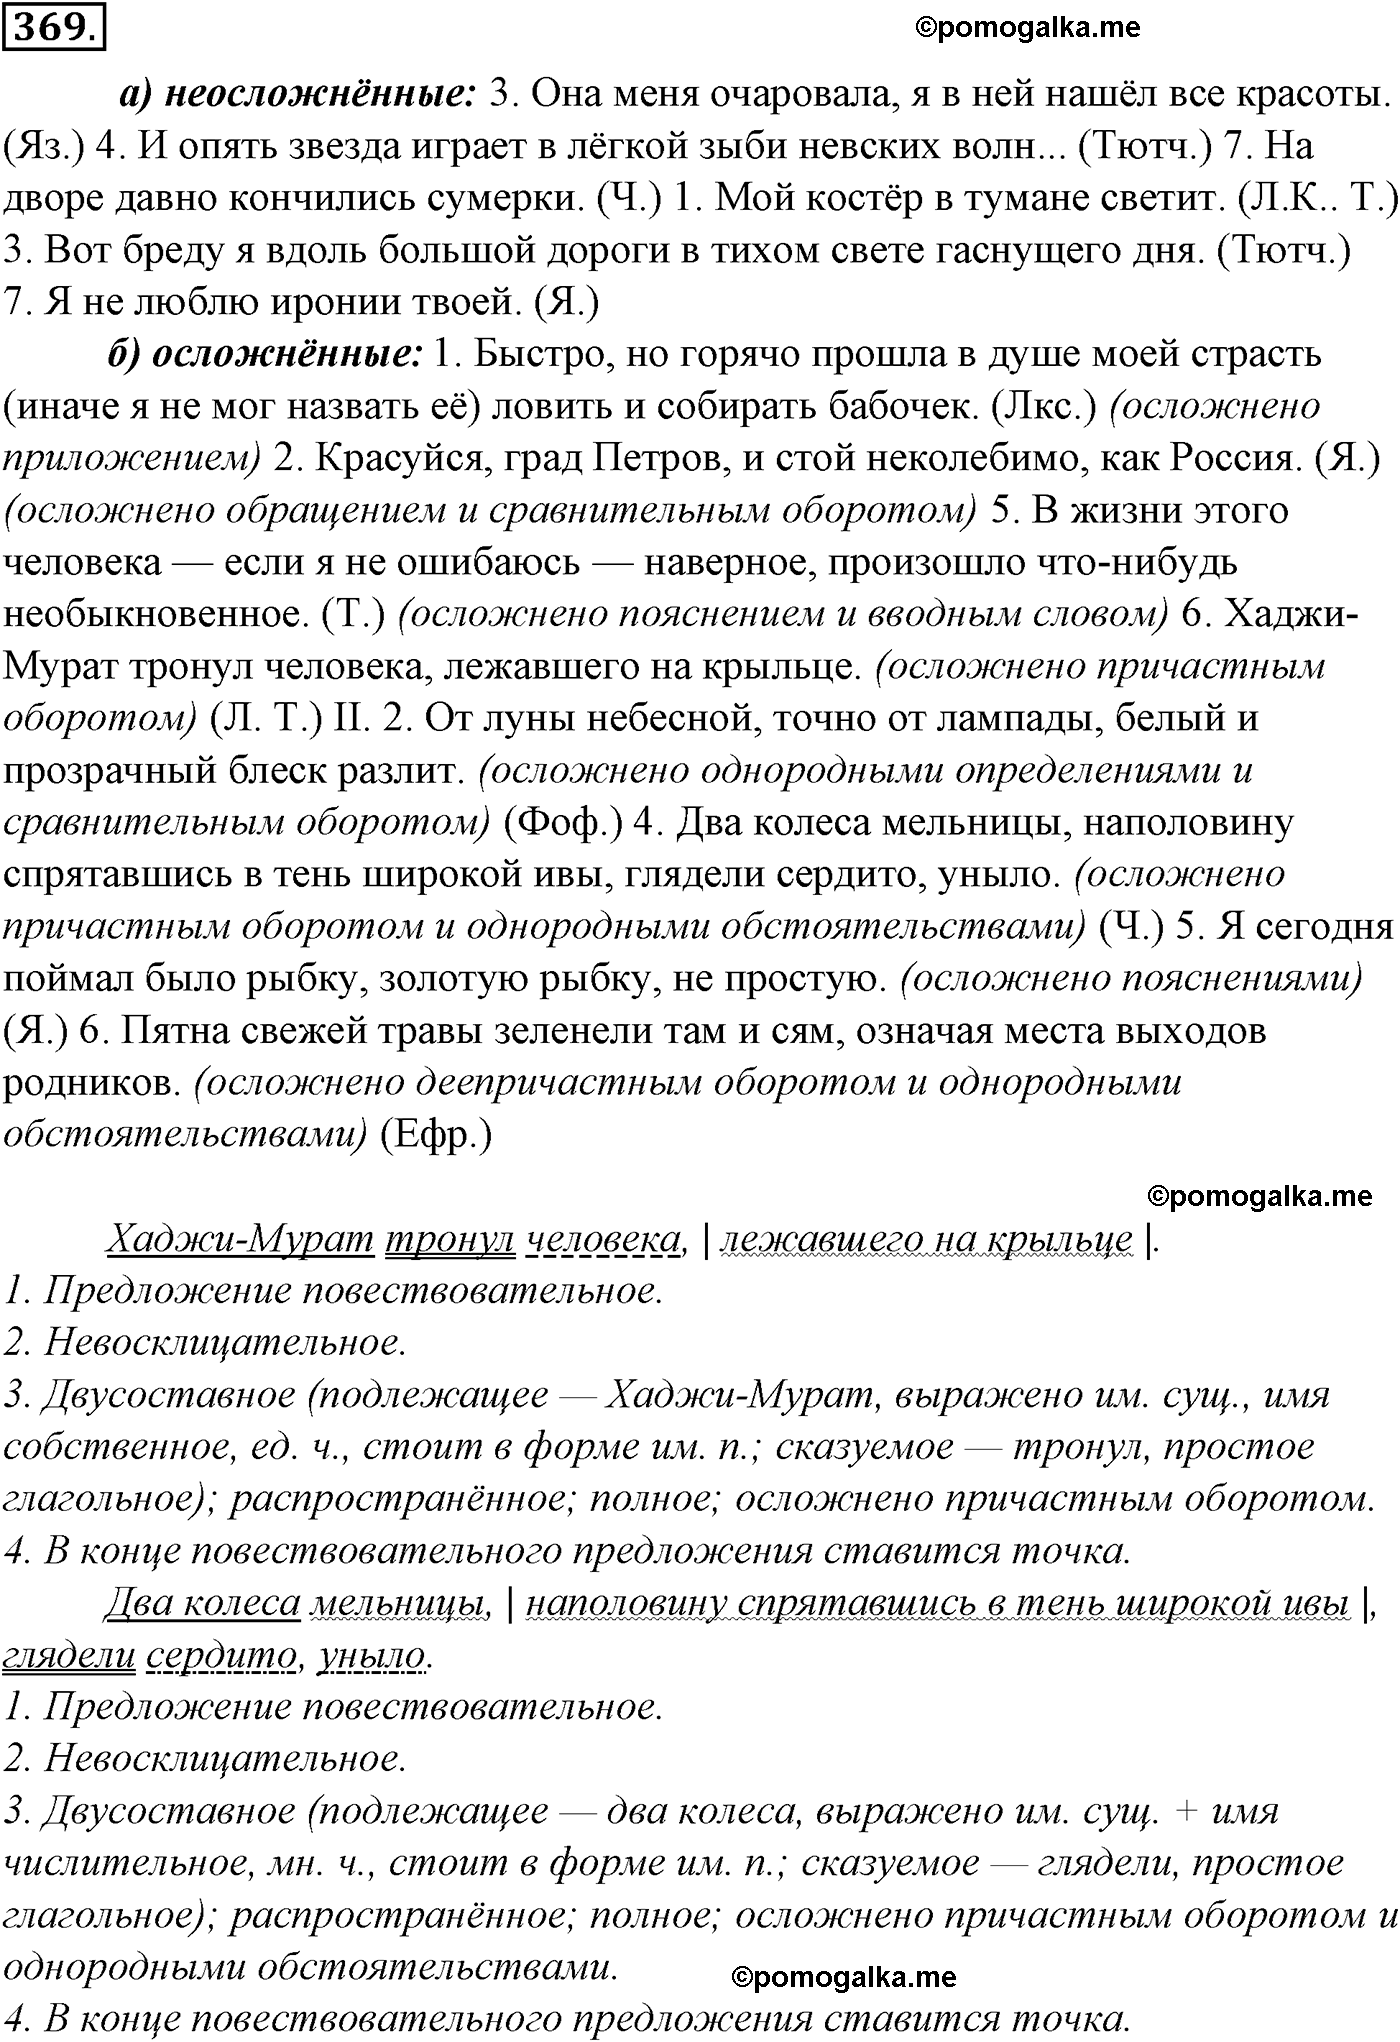 упражнение №369 русский язык 10-11 класс Гольцова